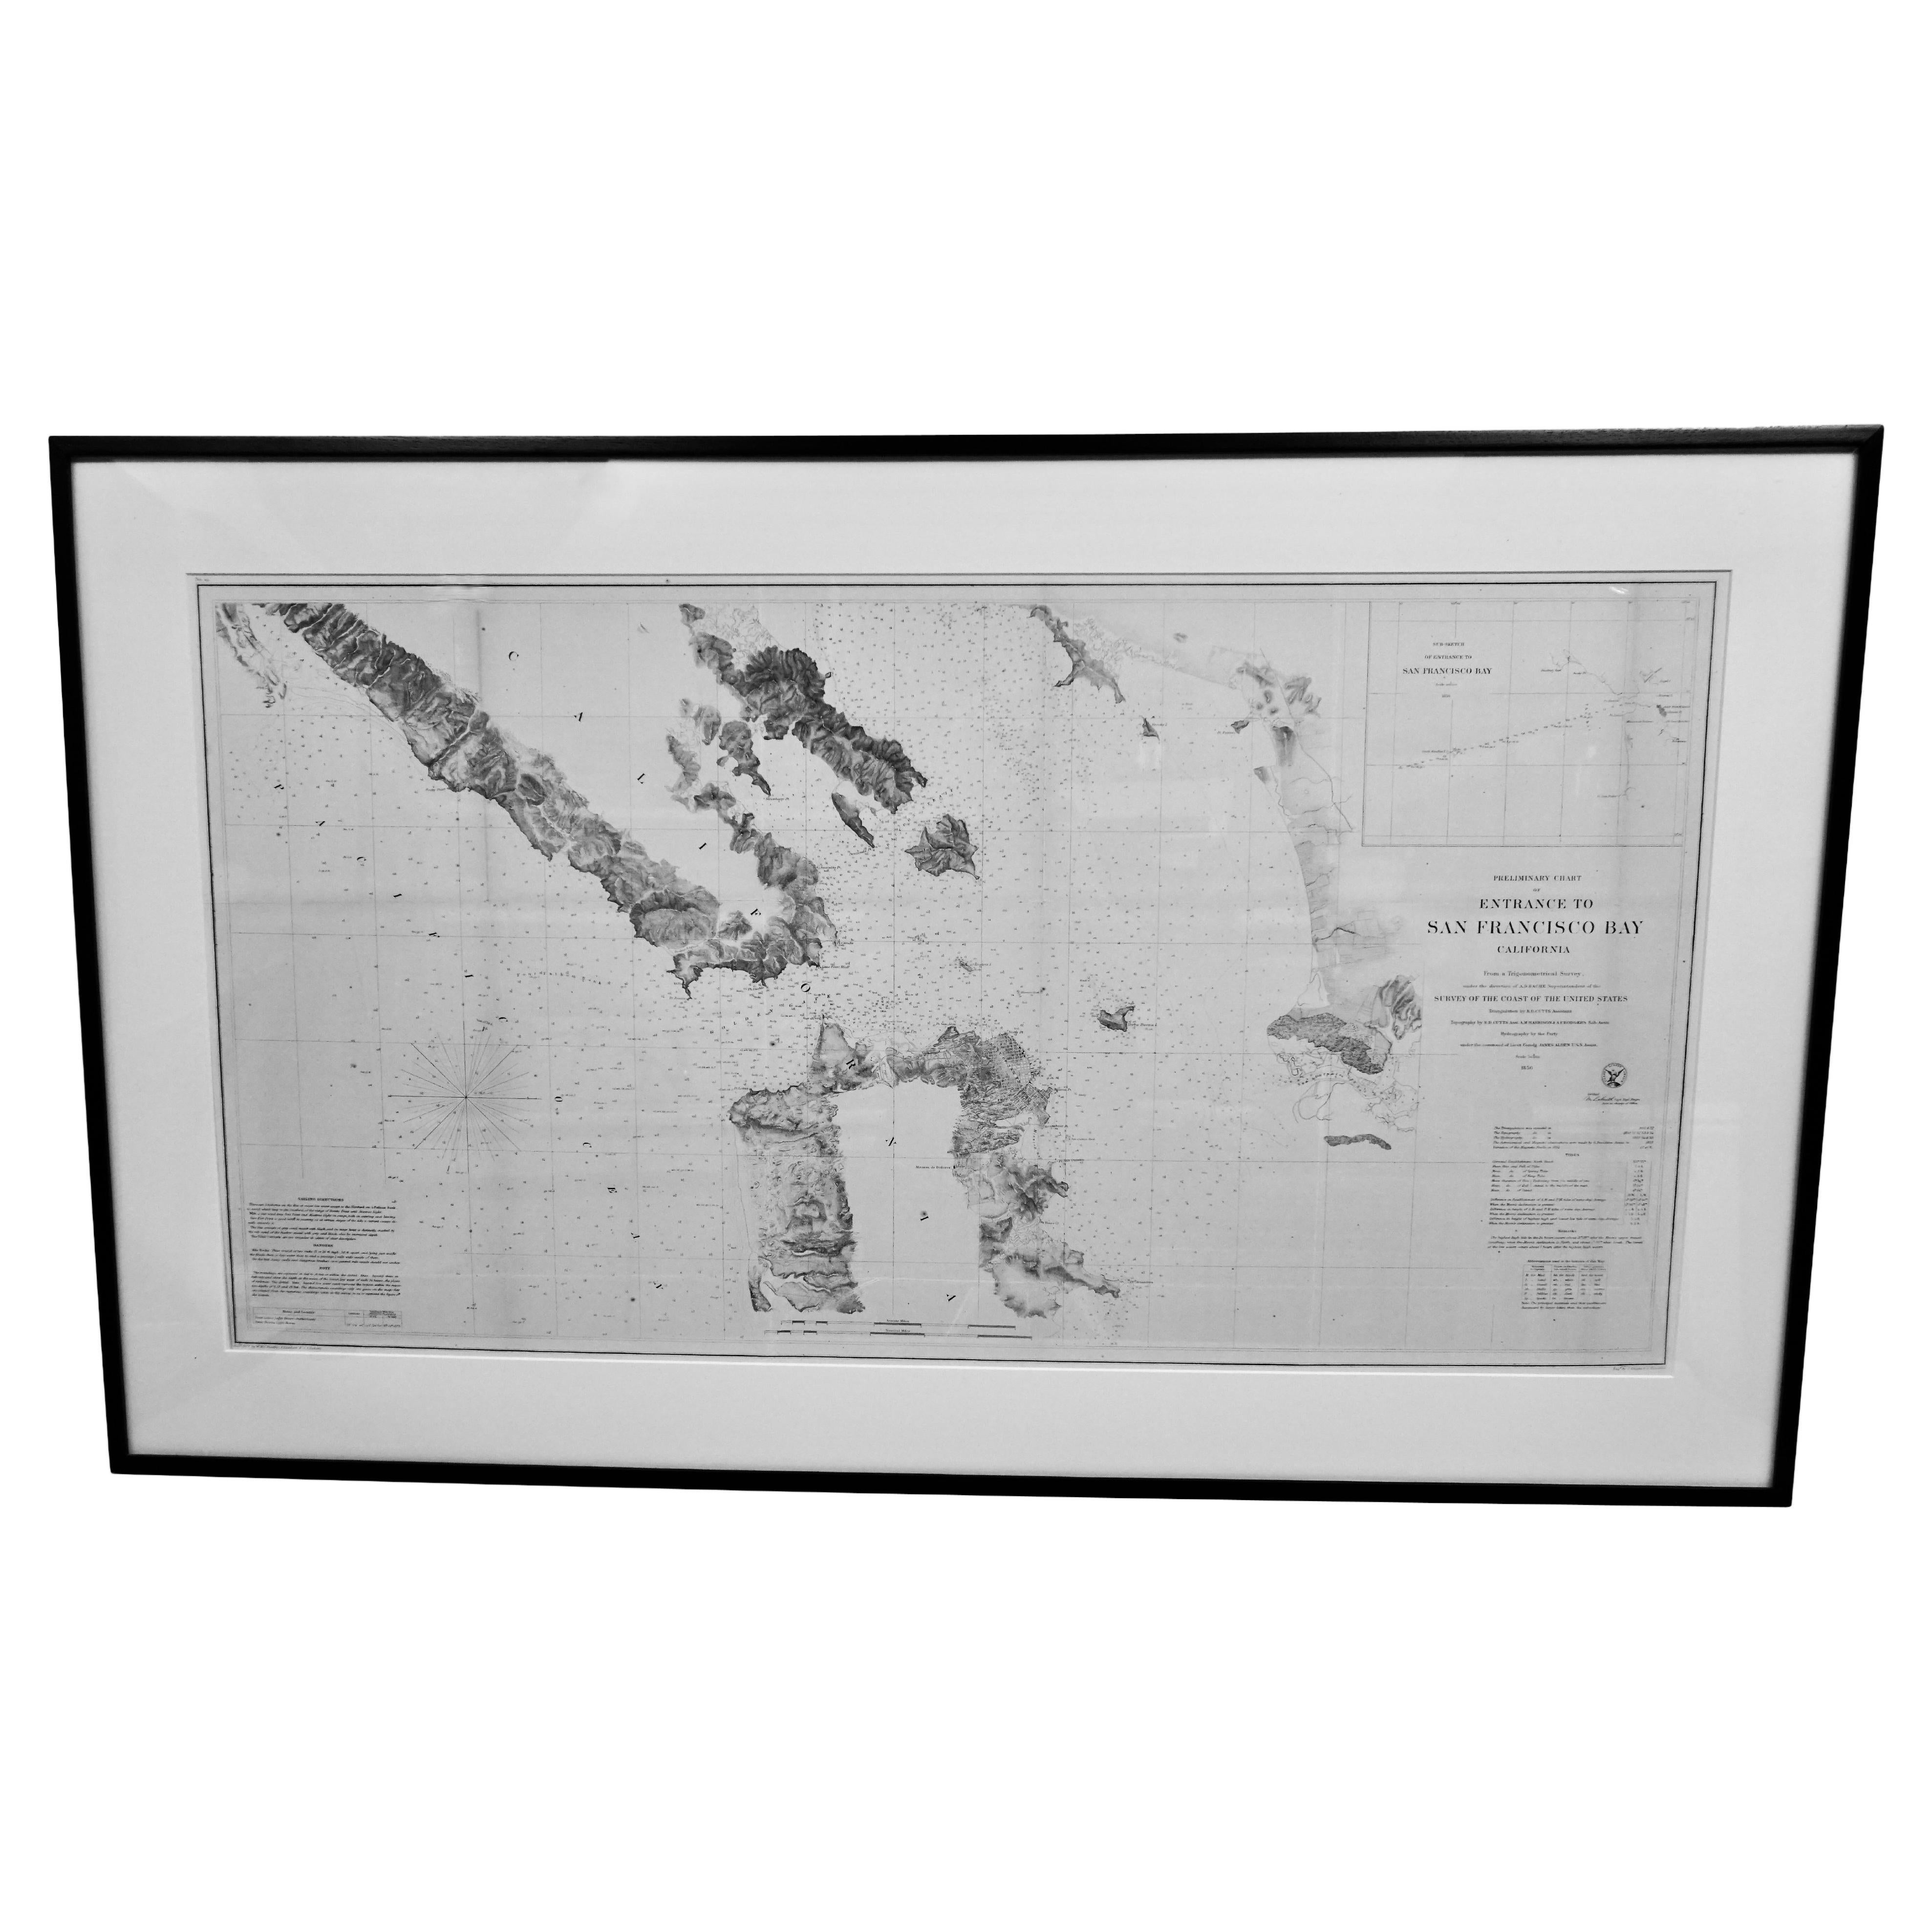 Rare carte d'arpentage de la côte américaine représentant l'entrée de la baie de San Francisco, datée de 1856